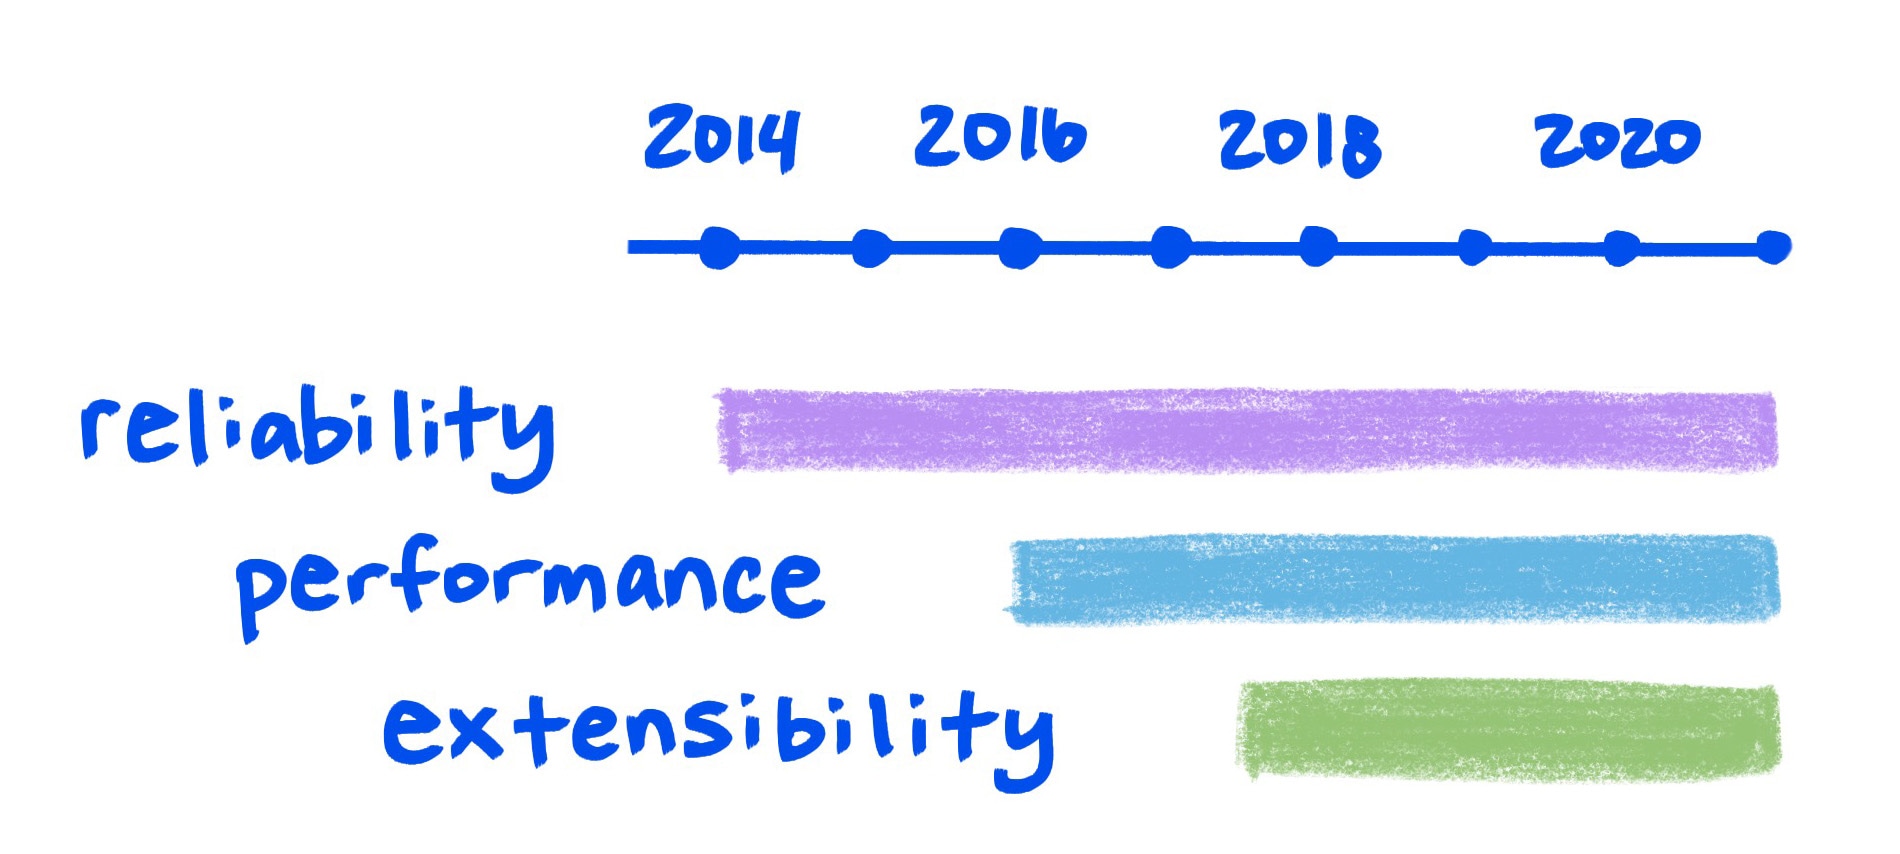 草圖顯示可靠性、效能和擴充性隨時間逐漸提升